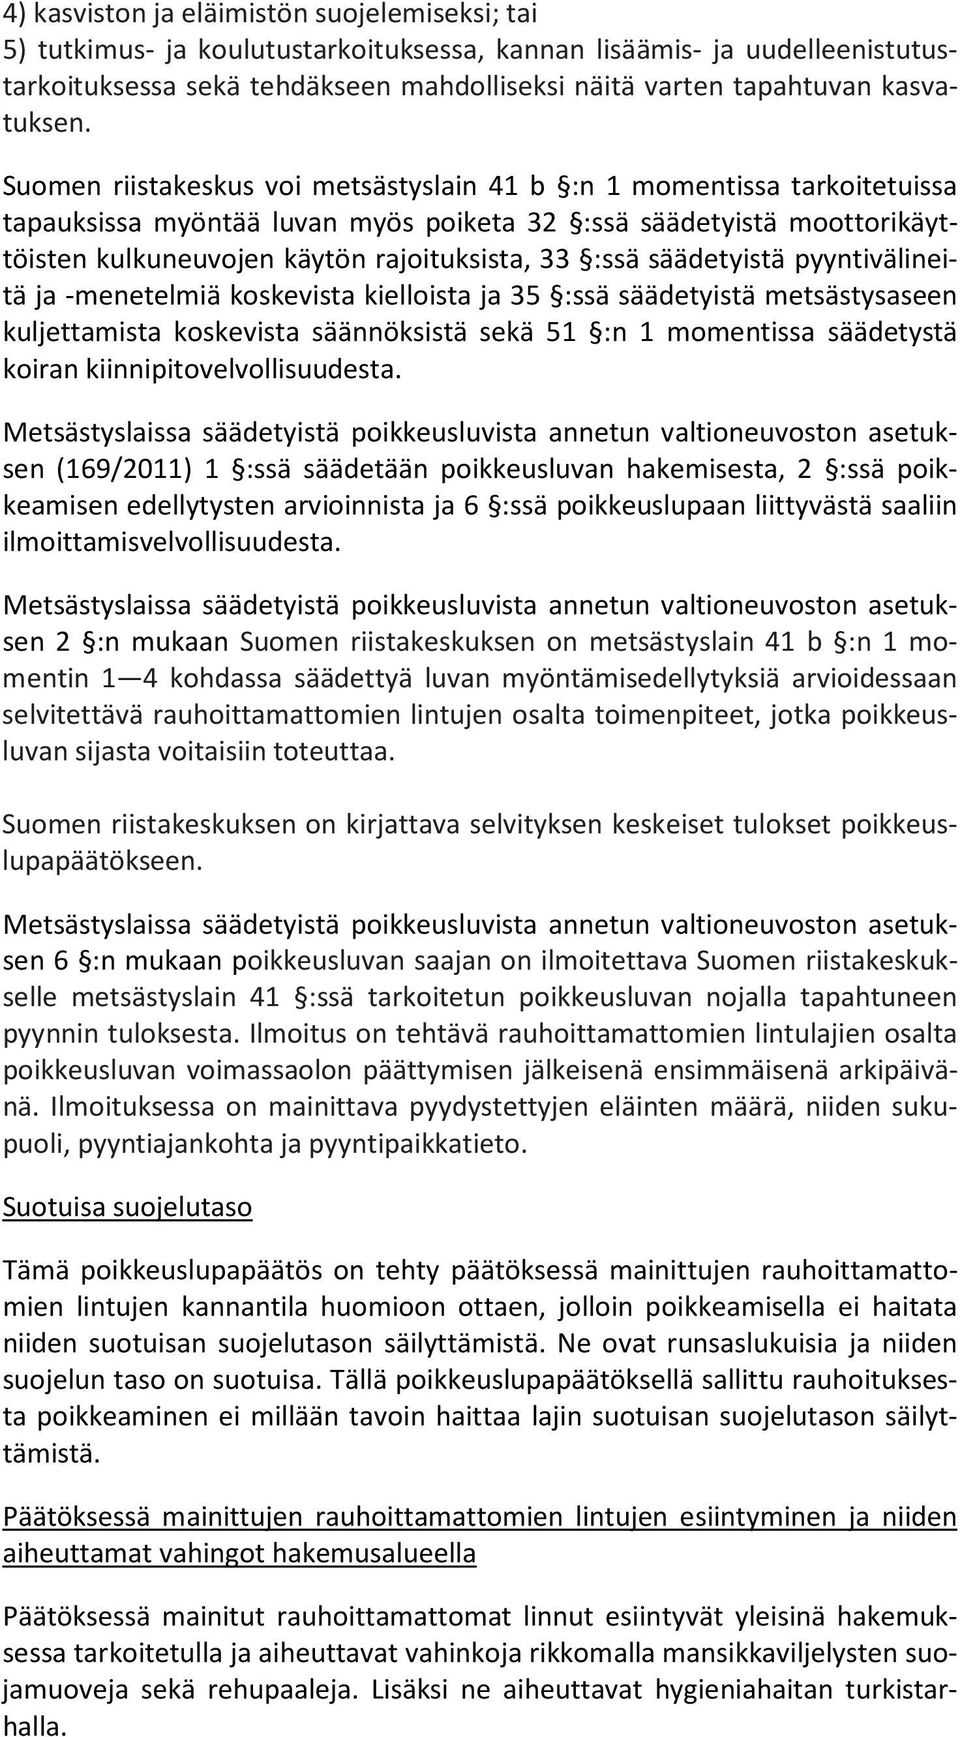 Suomen riistakeskus voi metsästyslain 41 b :n 1 momentissa tarkoitetuissa tapauksissa myöntää luvan myös poiketa 32 :ssä säädetyistä moottorikäyttöisten kulkuneuvojen käytön rajoituksista, 33 :ssä